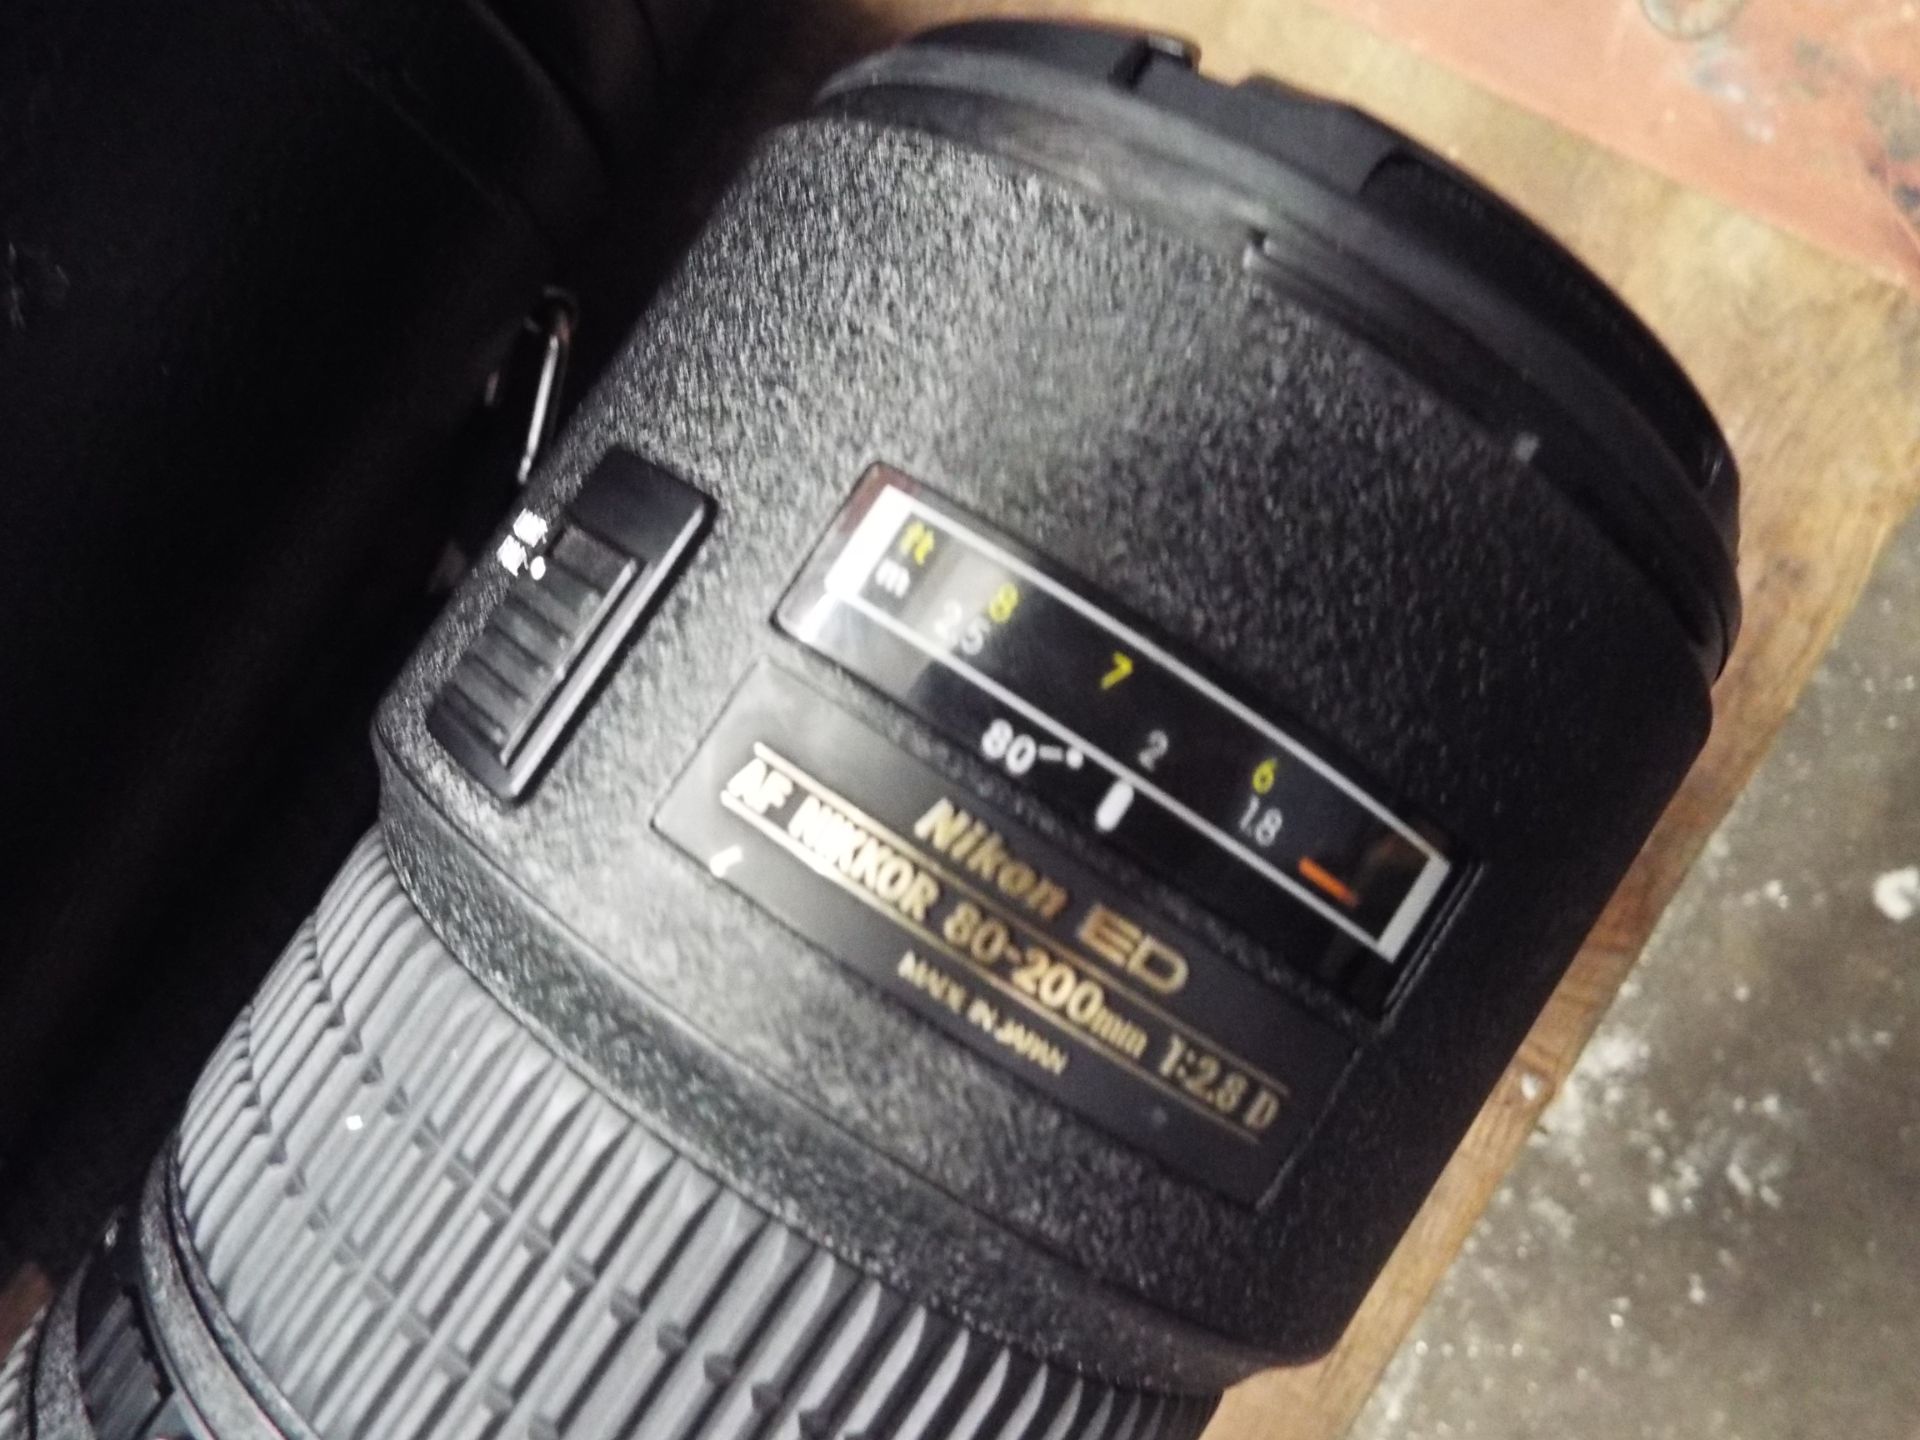 Nikon ED AF Nikkor 80-200mm 1:2.8 D Lense with Leather Carry Case - Image 2 of 8